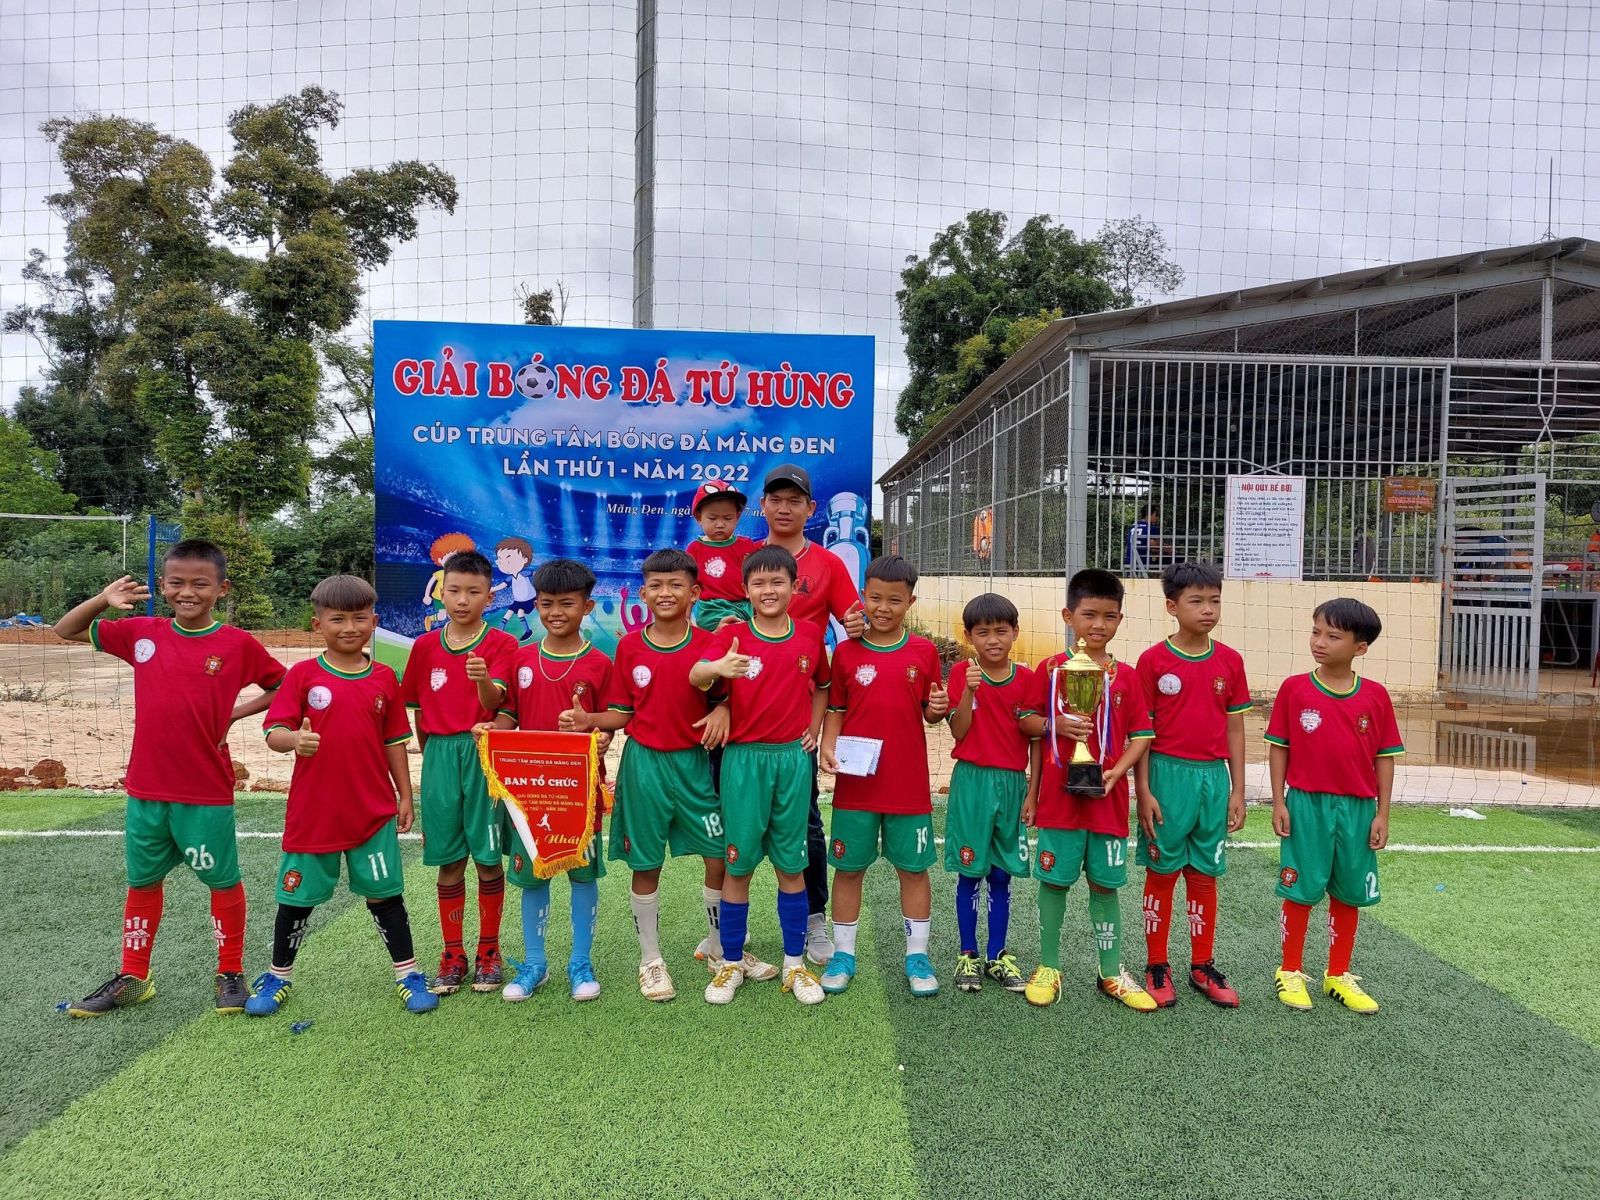 Trung tâm bóng đá cộng đồng Măng Đen - Sân chơi bóng đá cho trẻ em ở Măng Đen